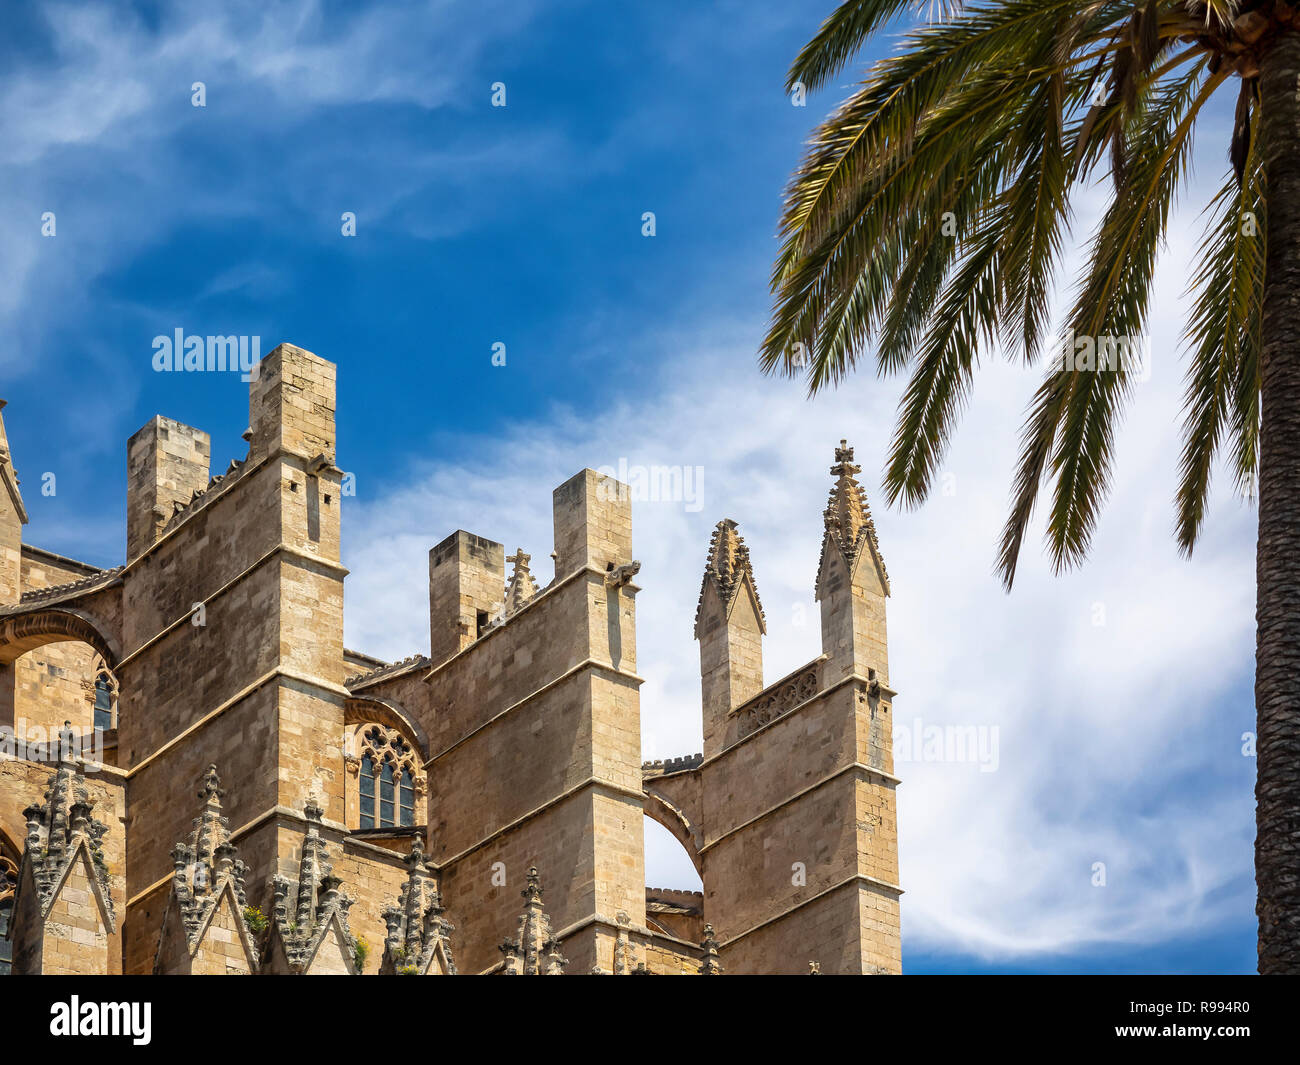 PALMA DE MALLORCA, SPANIEN - 23. MAI 2018: Kathedrale von Palma (Catedral de Santa María de Palma de Mallorca) Stockfoto